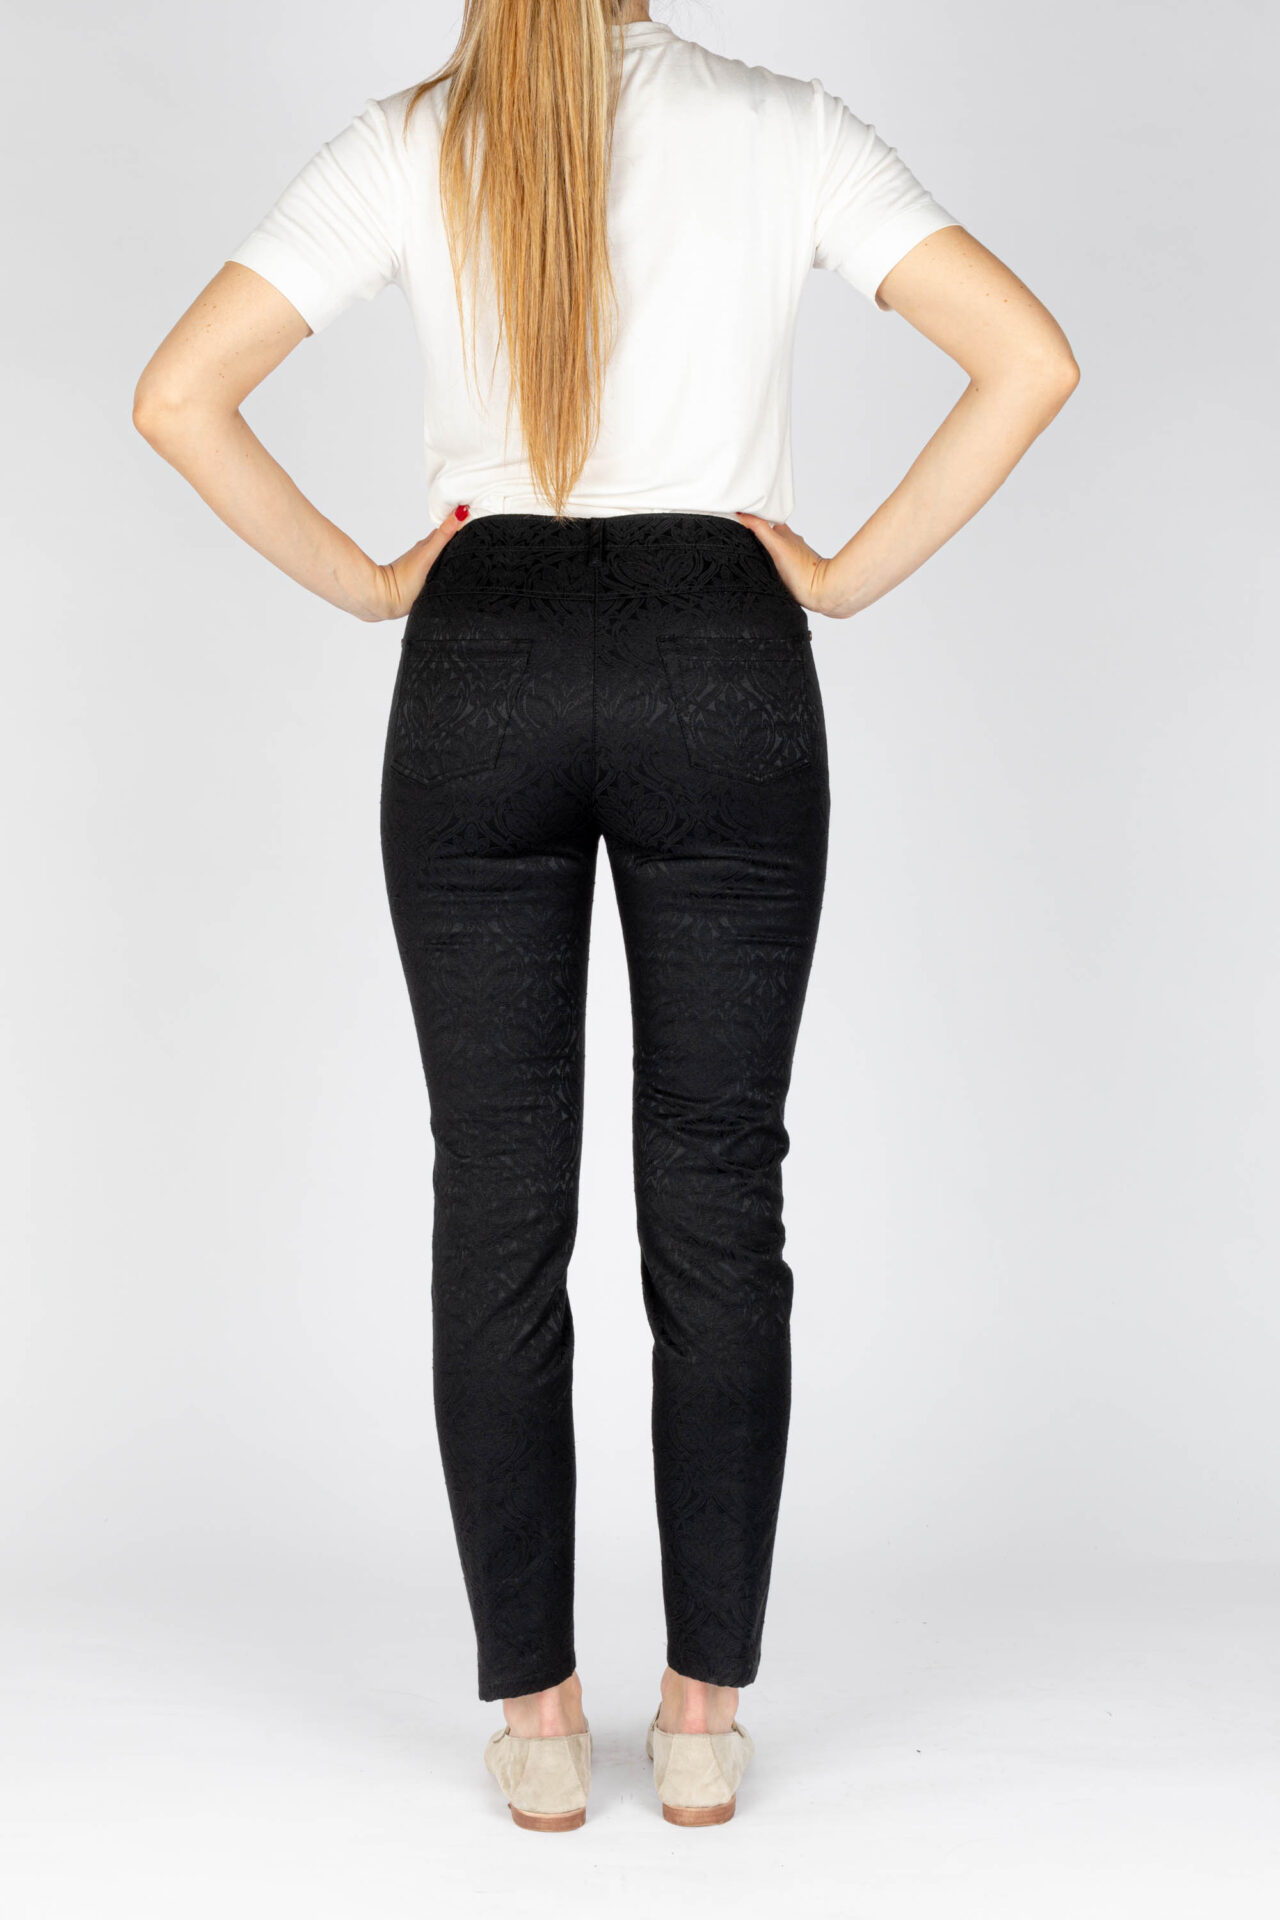 Pantaloni disegno fiore colore nero, linea Jeans tessuto jacquard